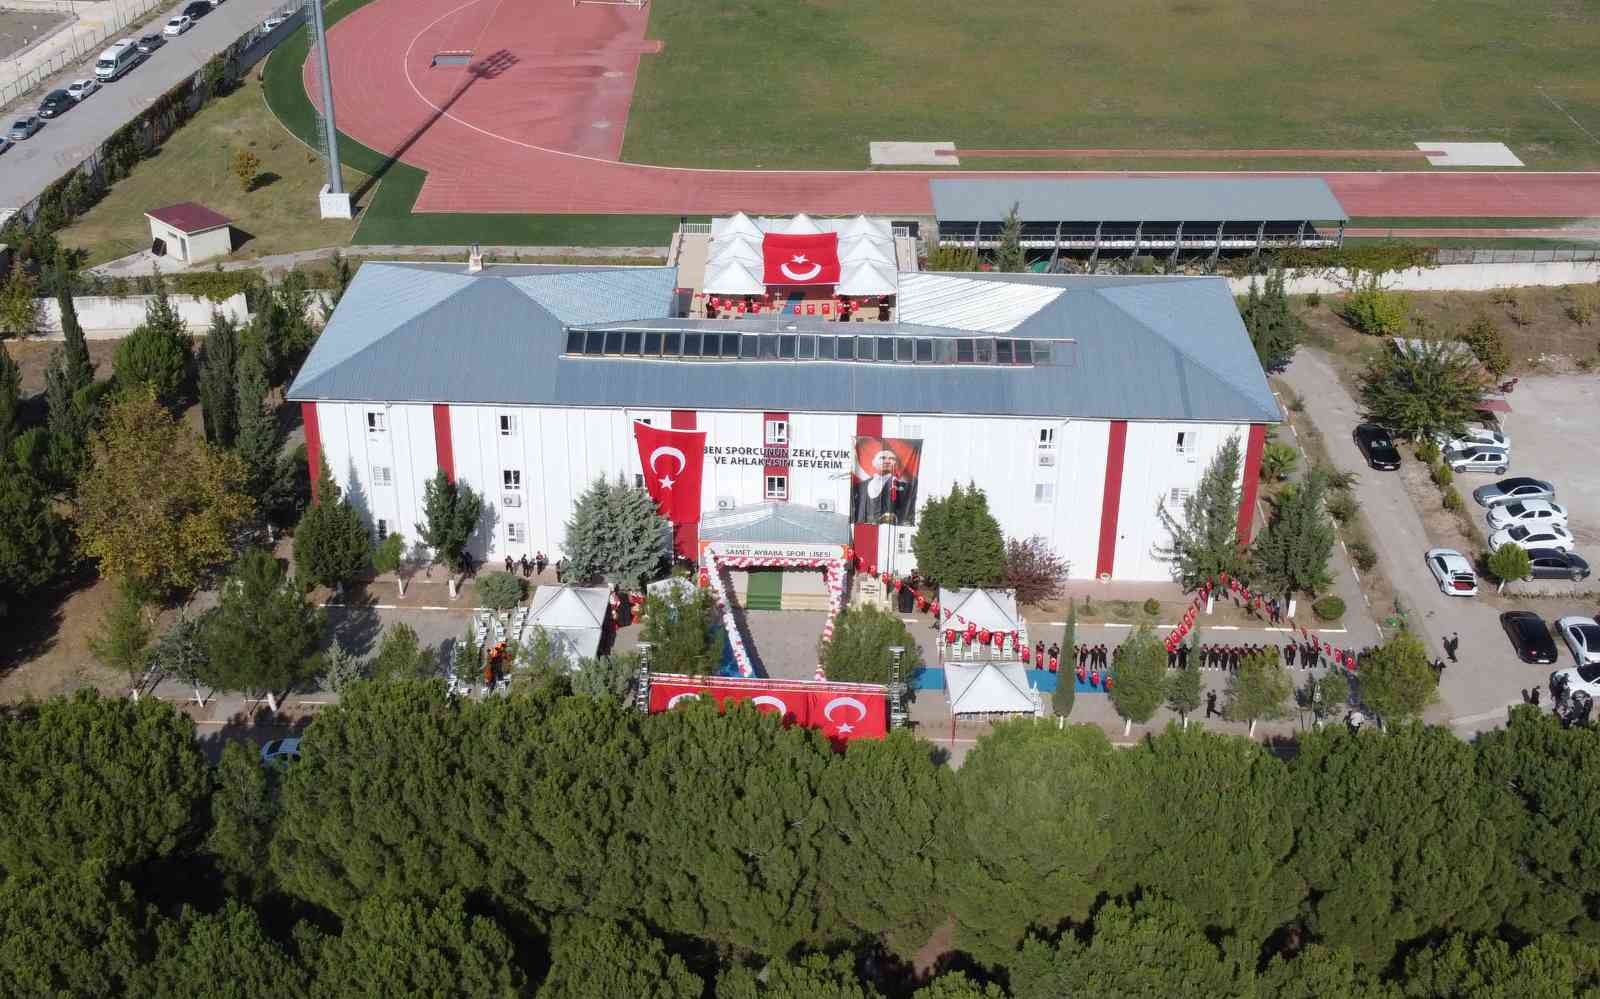 Osmaniye Samet Aybaba Spor Lisesi açıldı #osmaniye